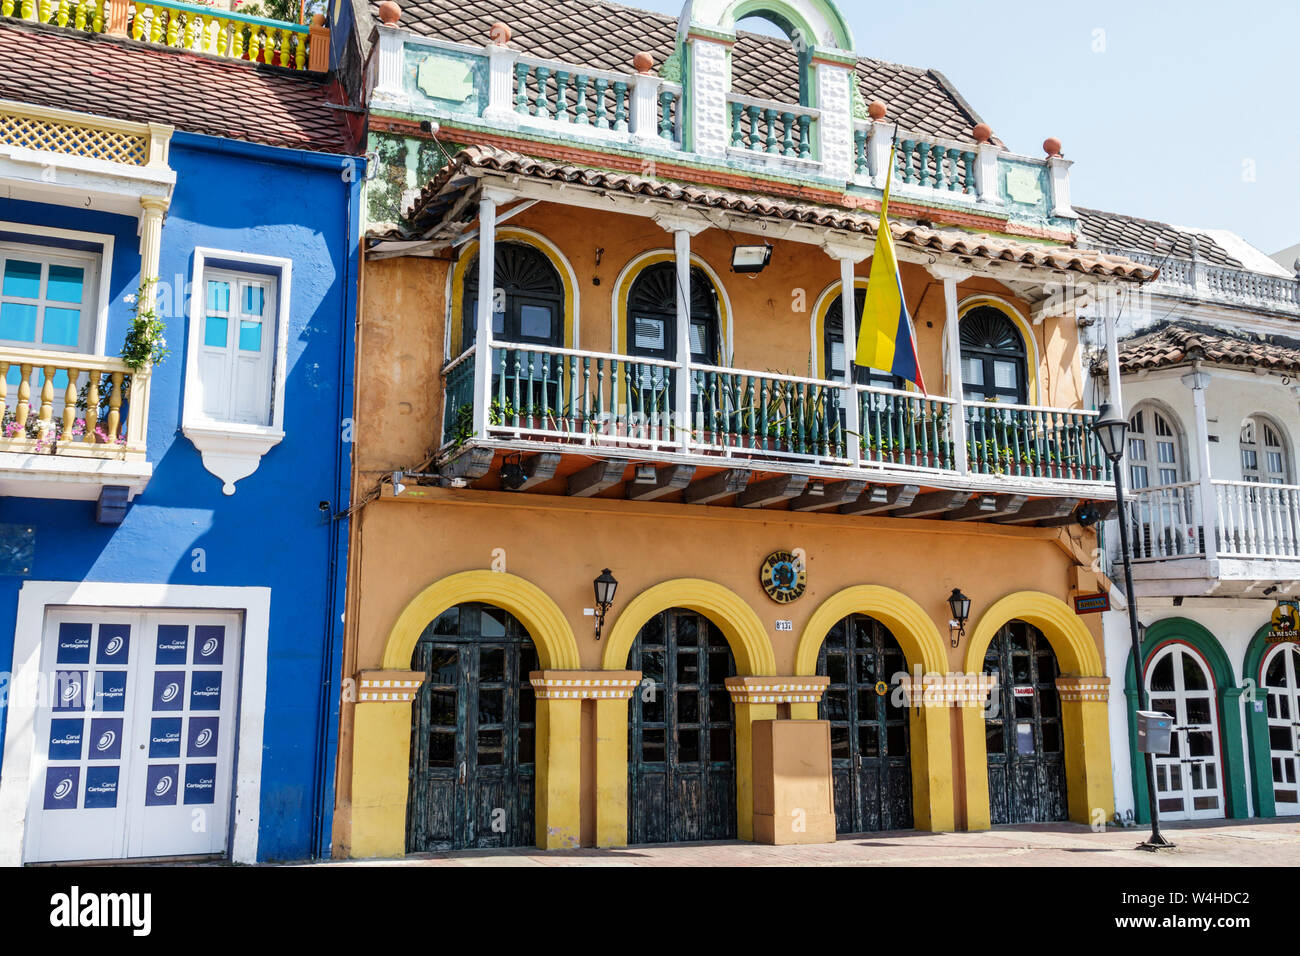 Colombia Cartagena Centro de la Ciudad amurallado Antiguo arquitectura colonial restaurada casas redecoradas fachada colores brillantes balcones de madera arcos Foto de stock